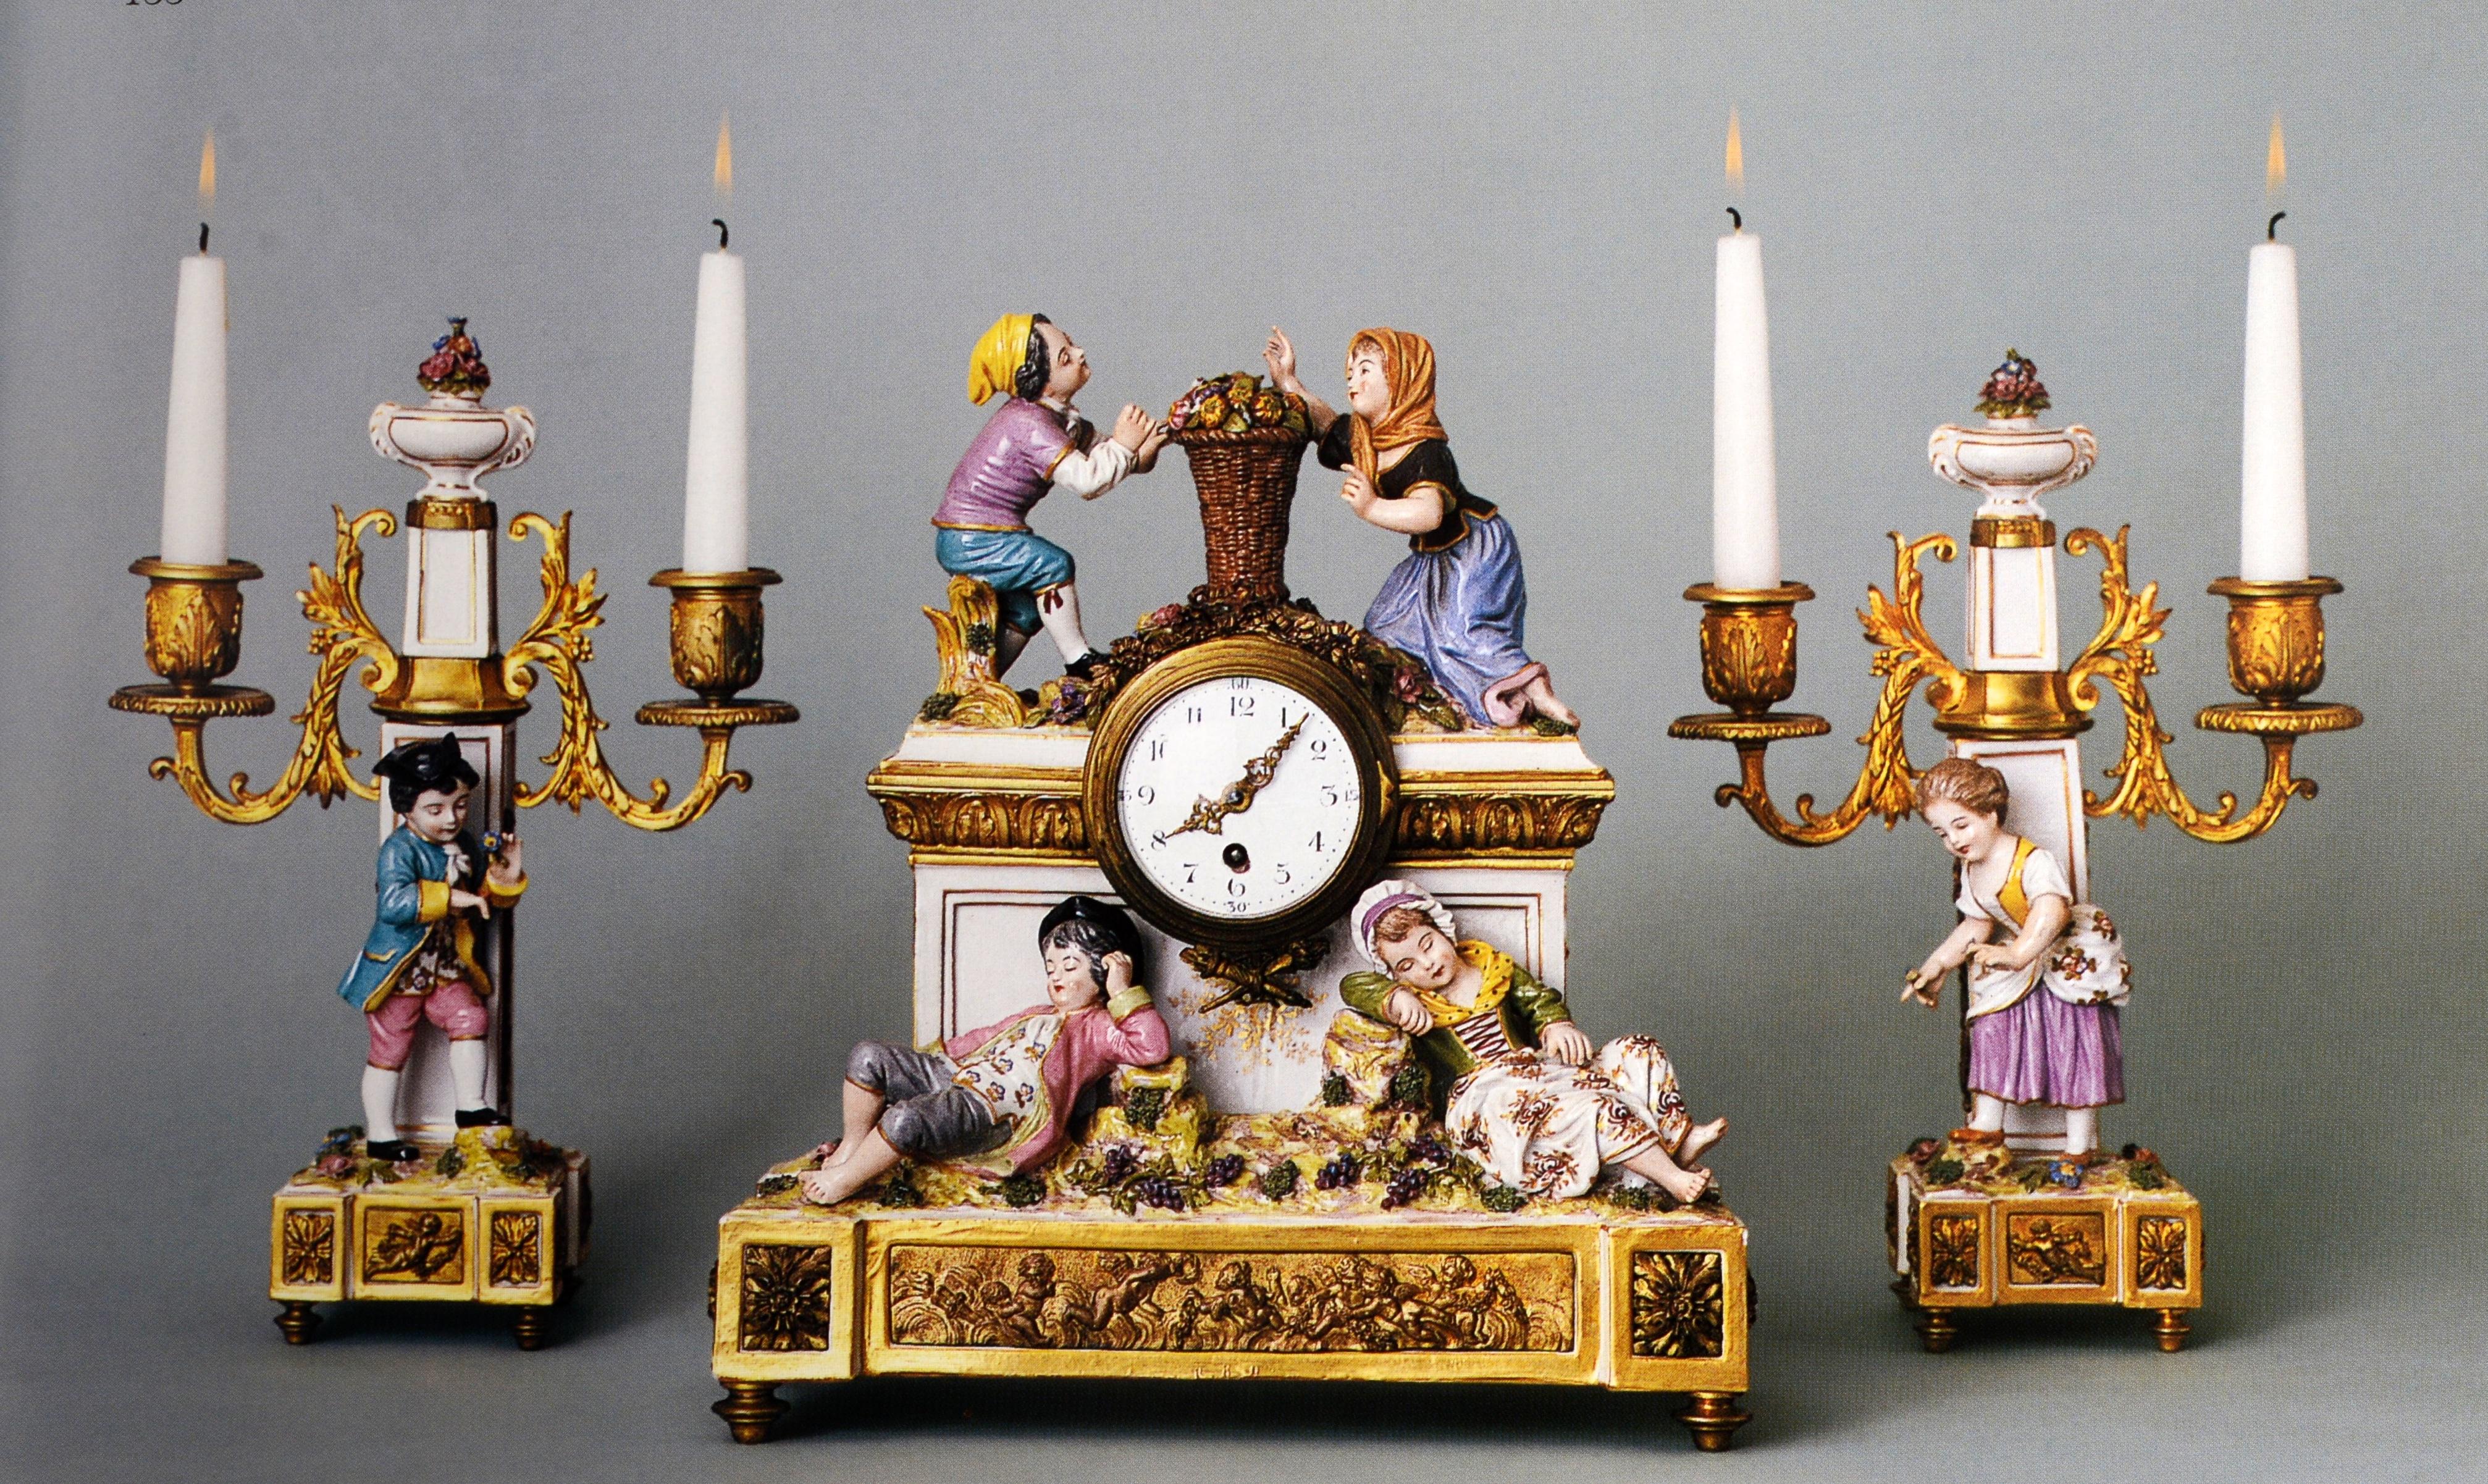 Papier Collection d'horloges de justice Warren Shepro : Sotheby's NY, 26 avril 2001, 1ère édition en vente